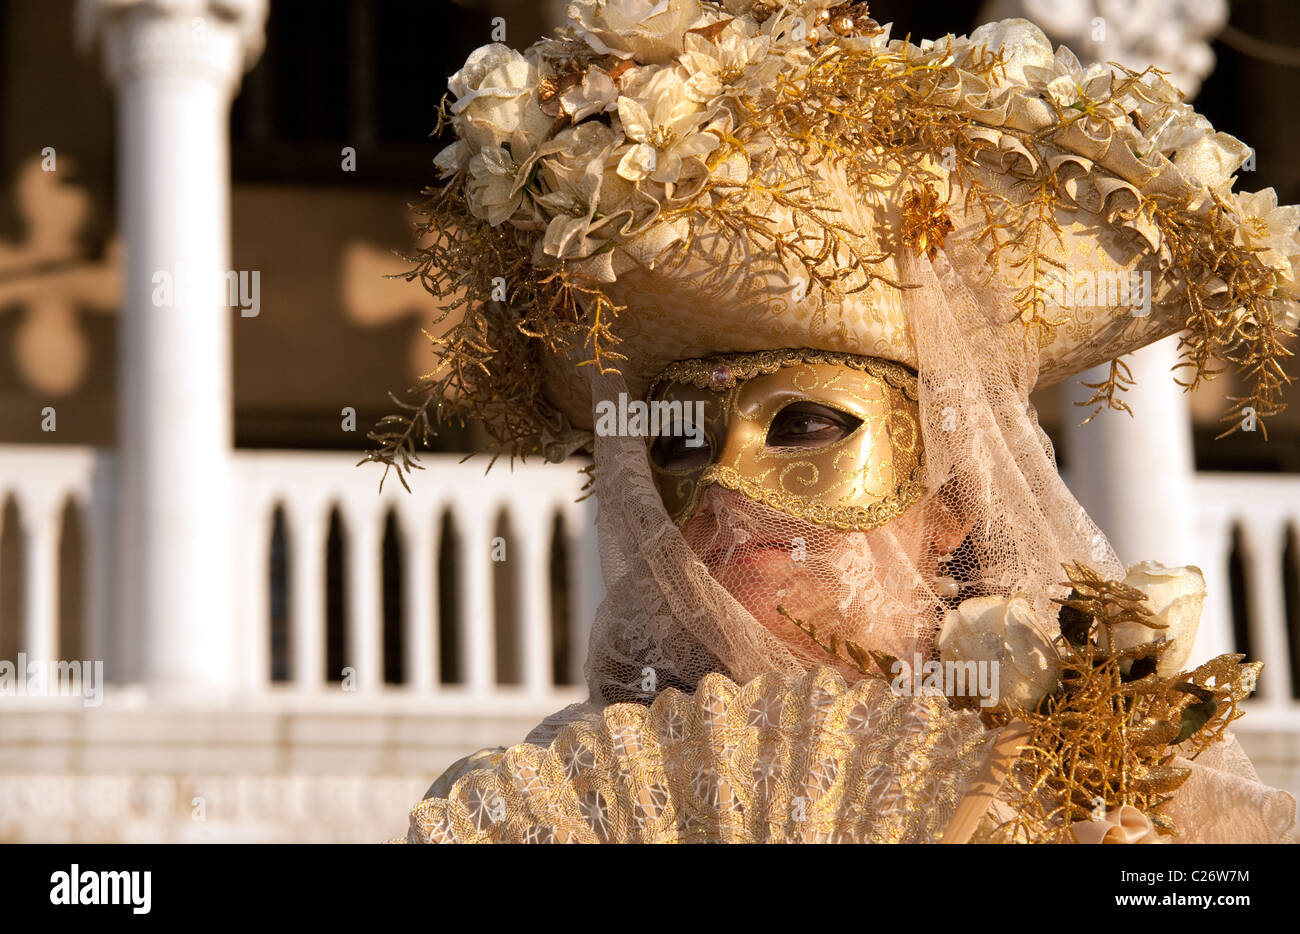 Personaggio femminile in costume, il Carnevale di Venezia Italia Foto Stock